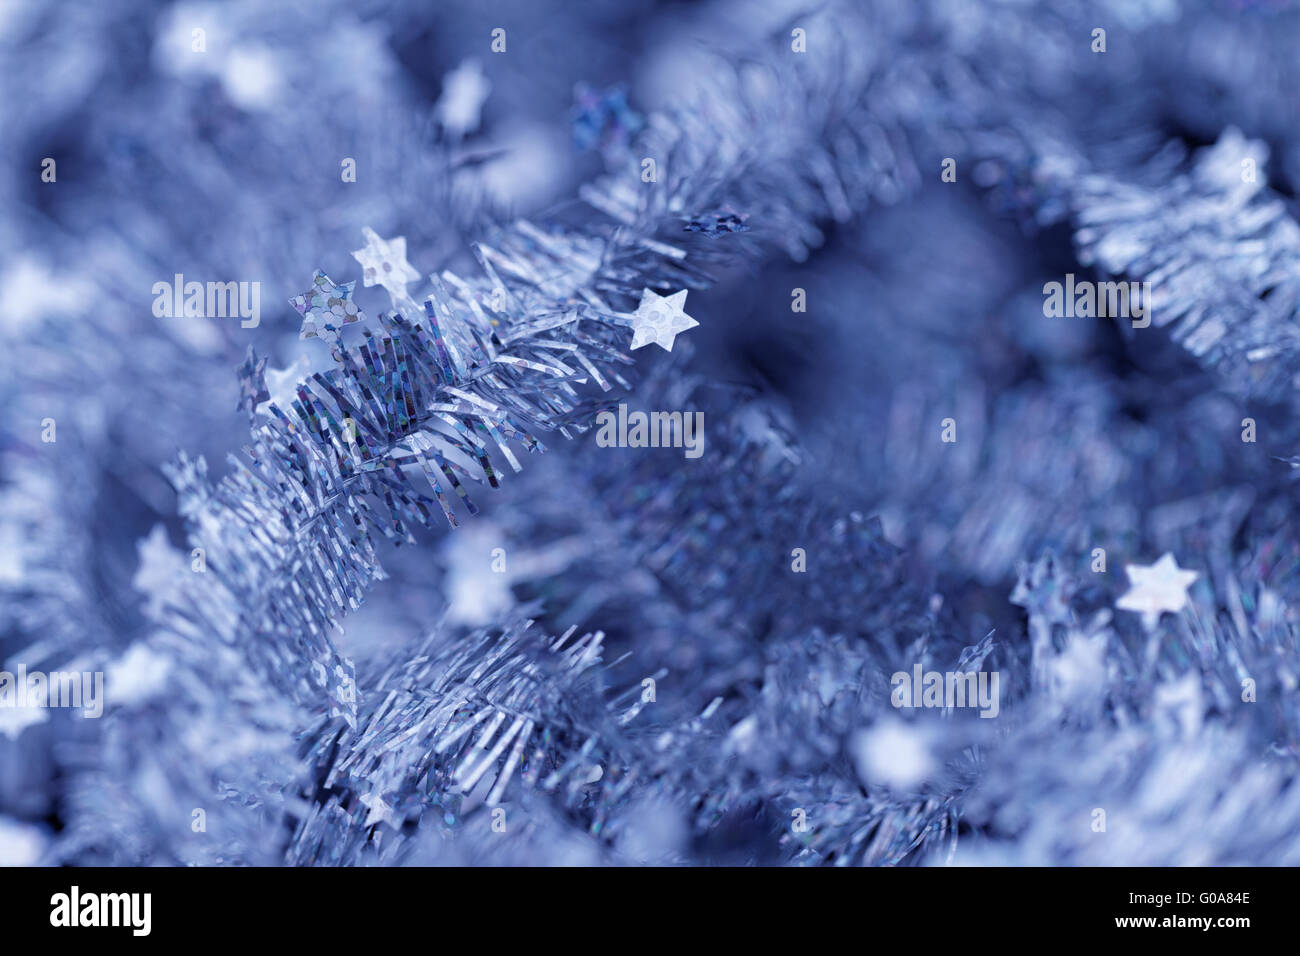 Similrame blu decorazione di Natale - close-up foto Foto Stock